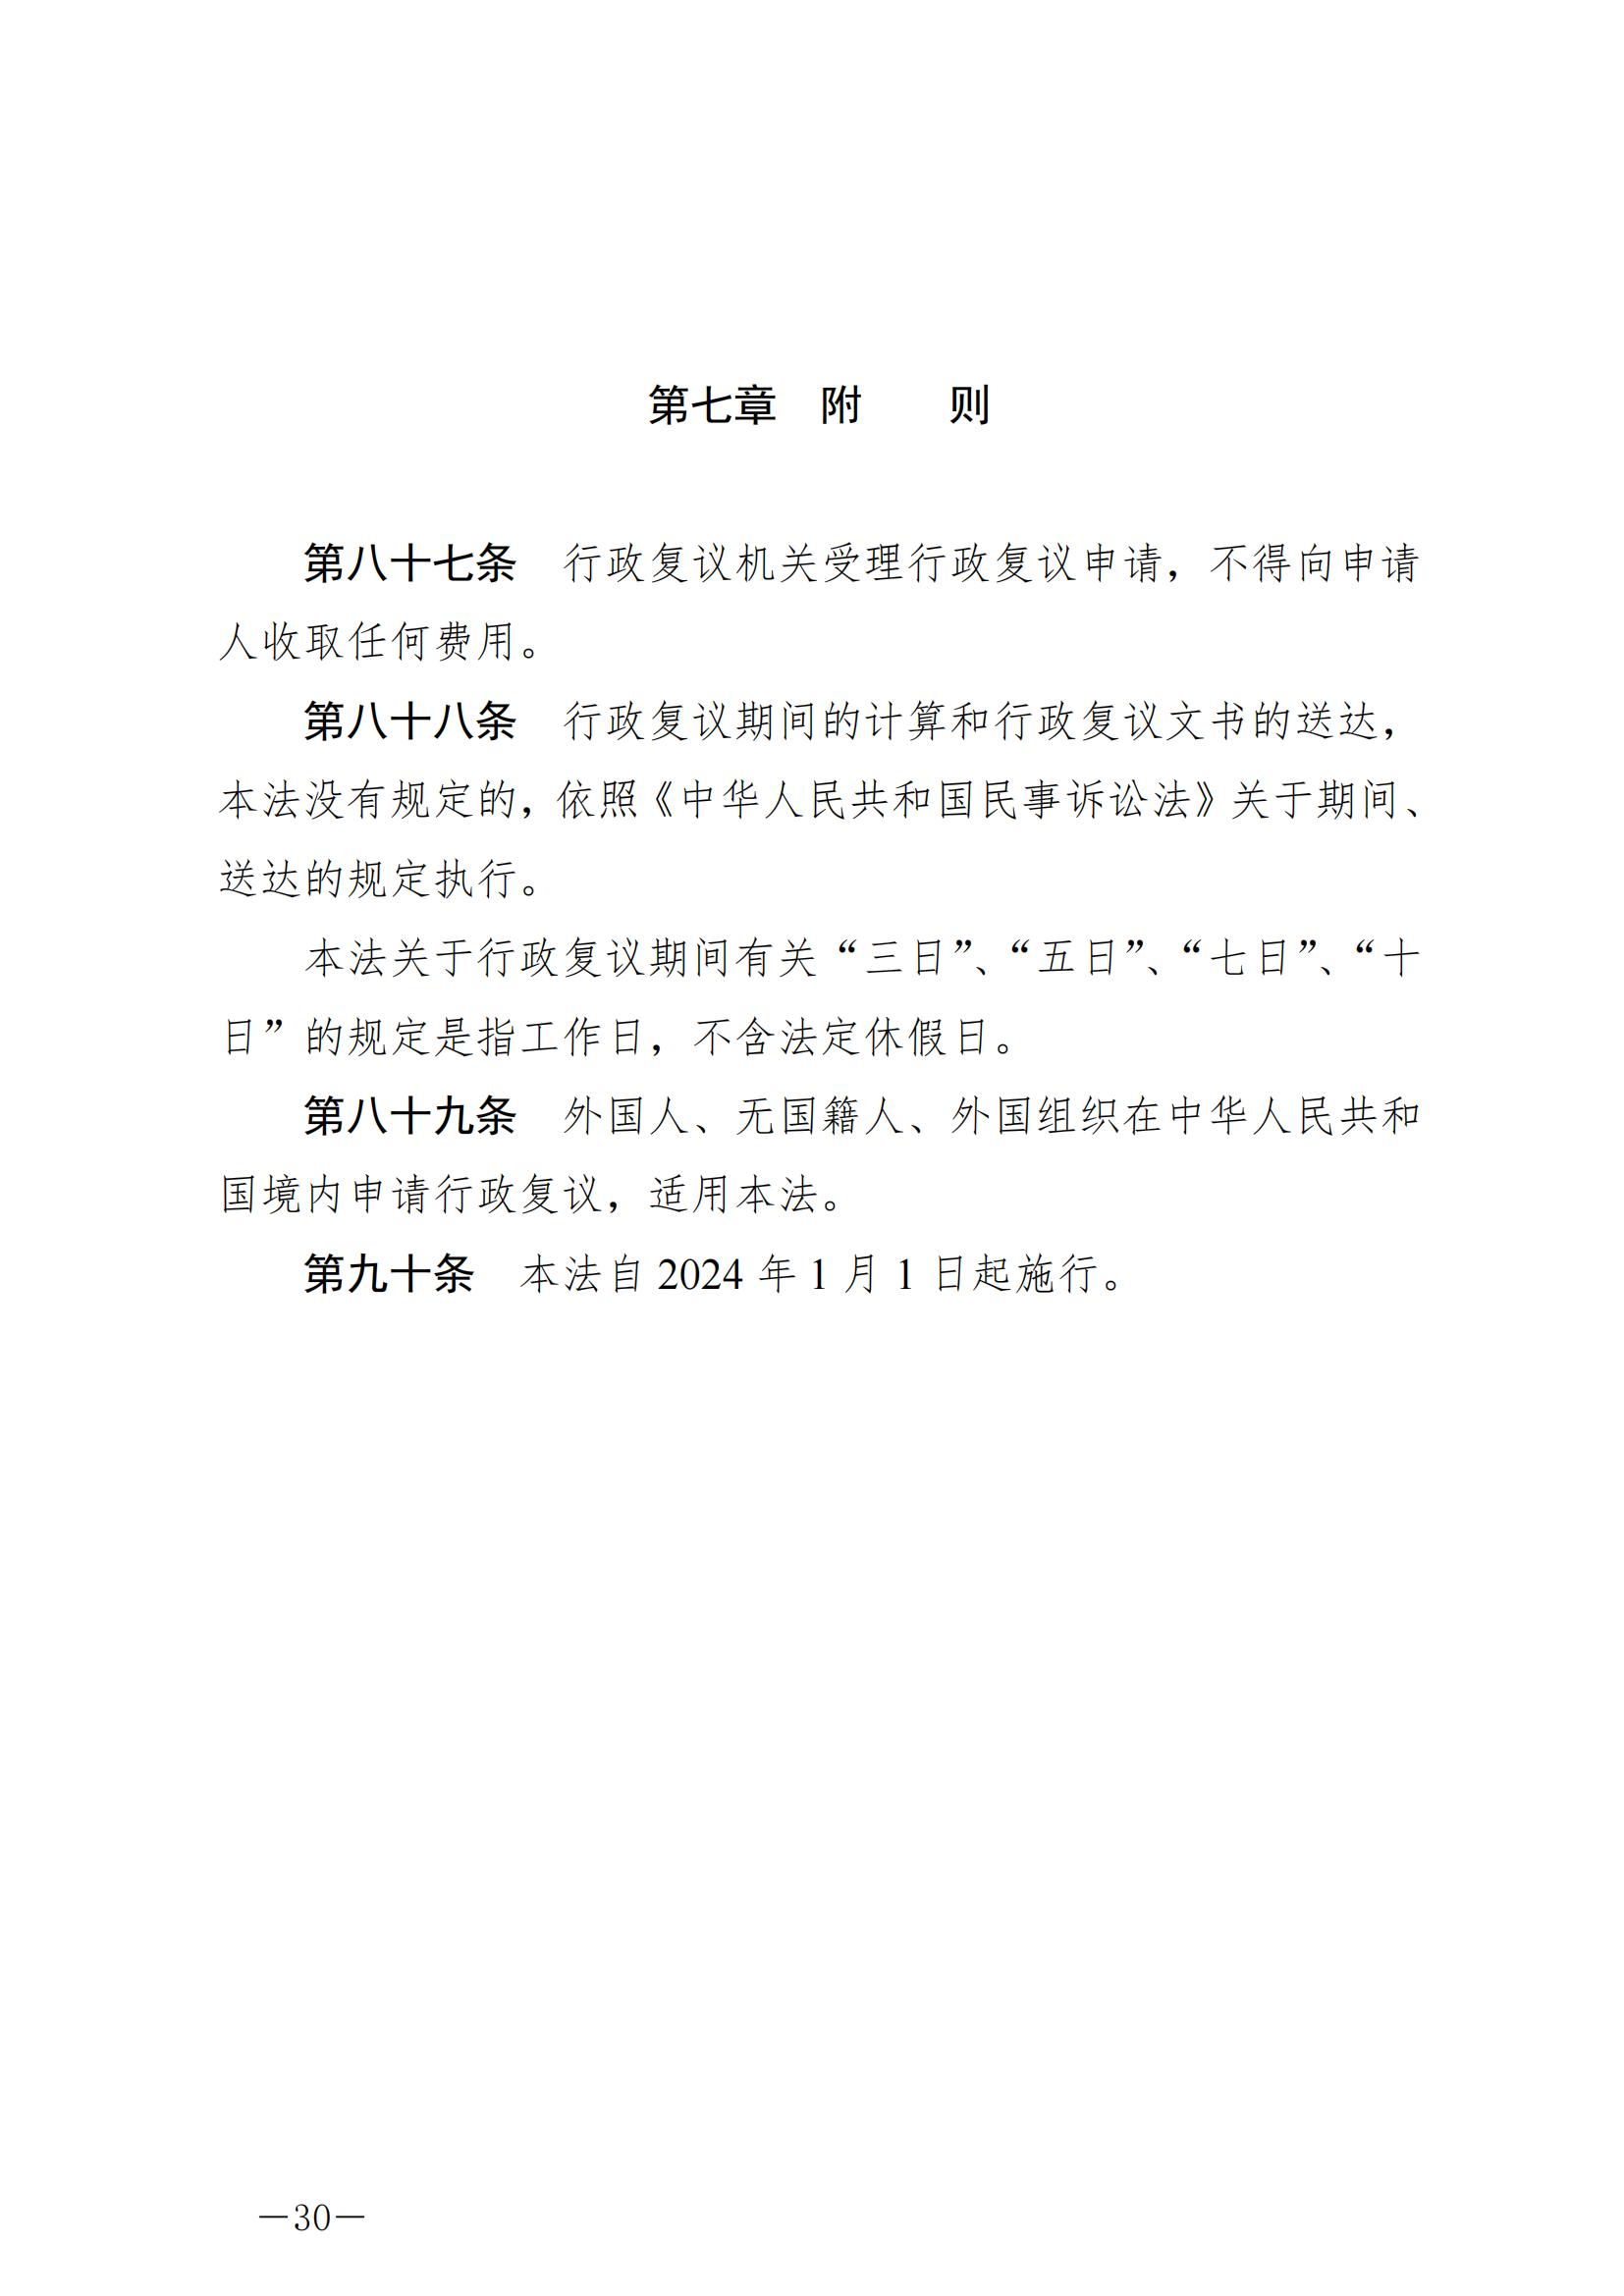 《中华人民共和国行政复议法》_20231204154310_29.jpg